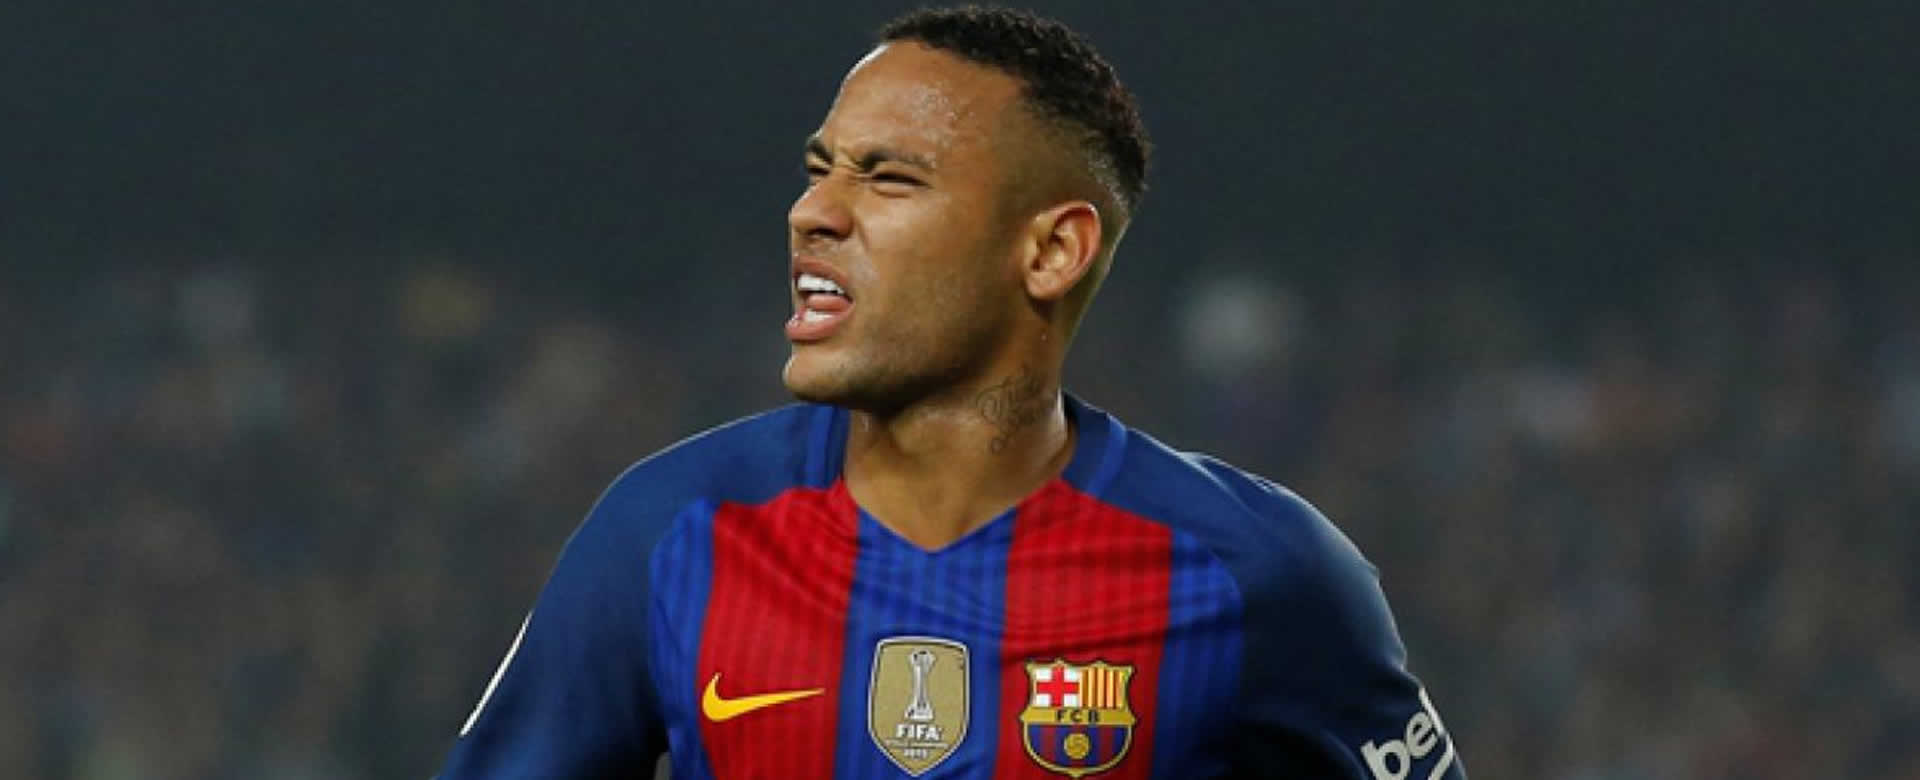 Liga Profesional Española quiere a Neymar de regreso